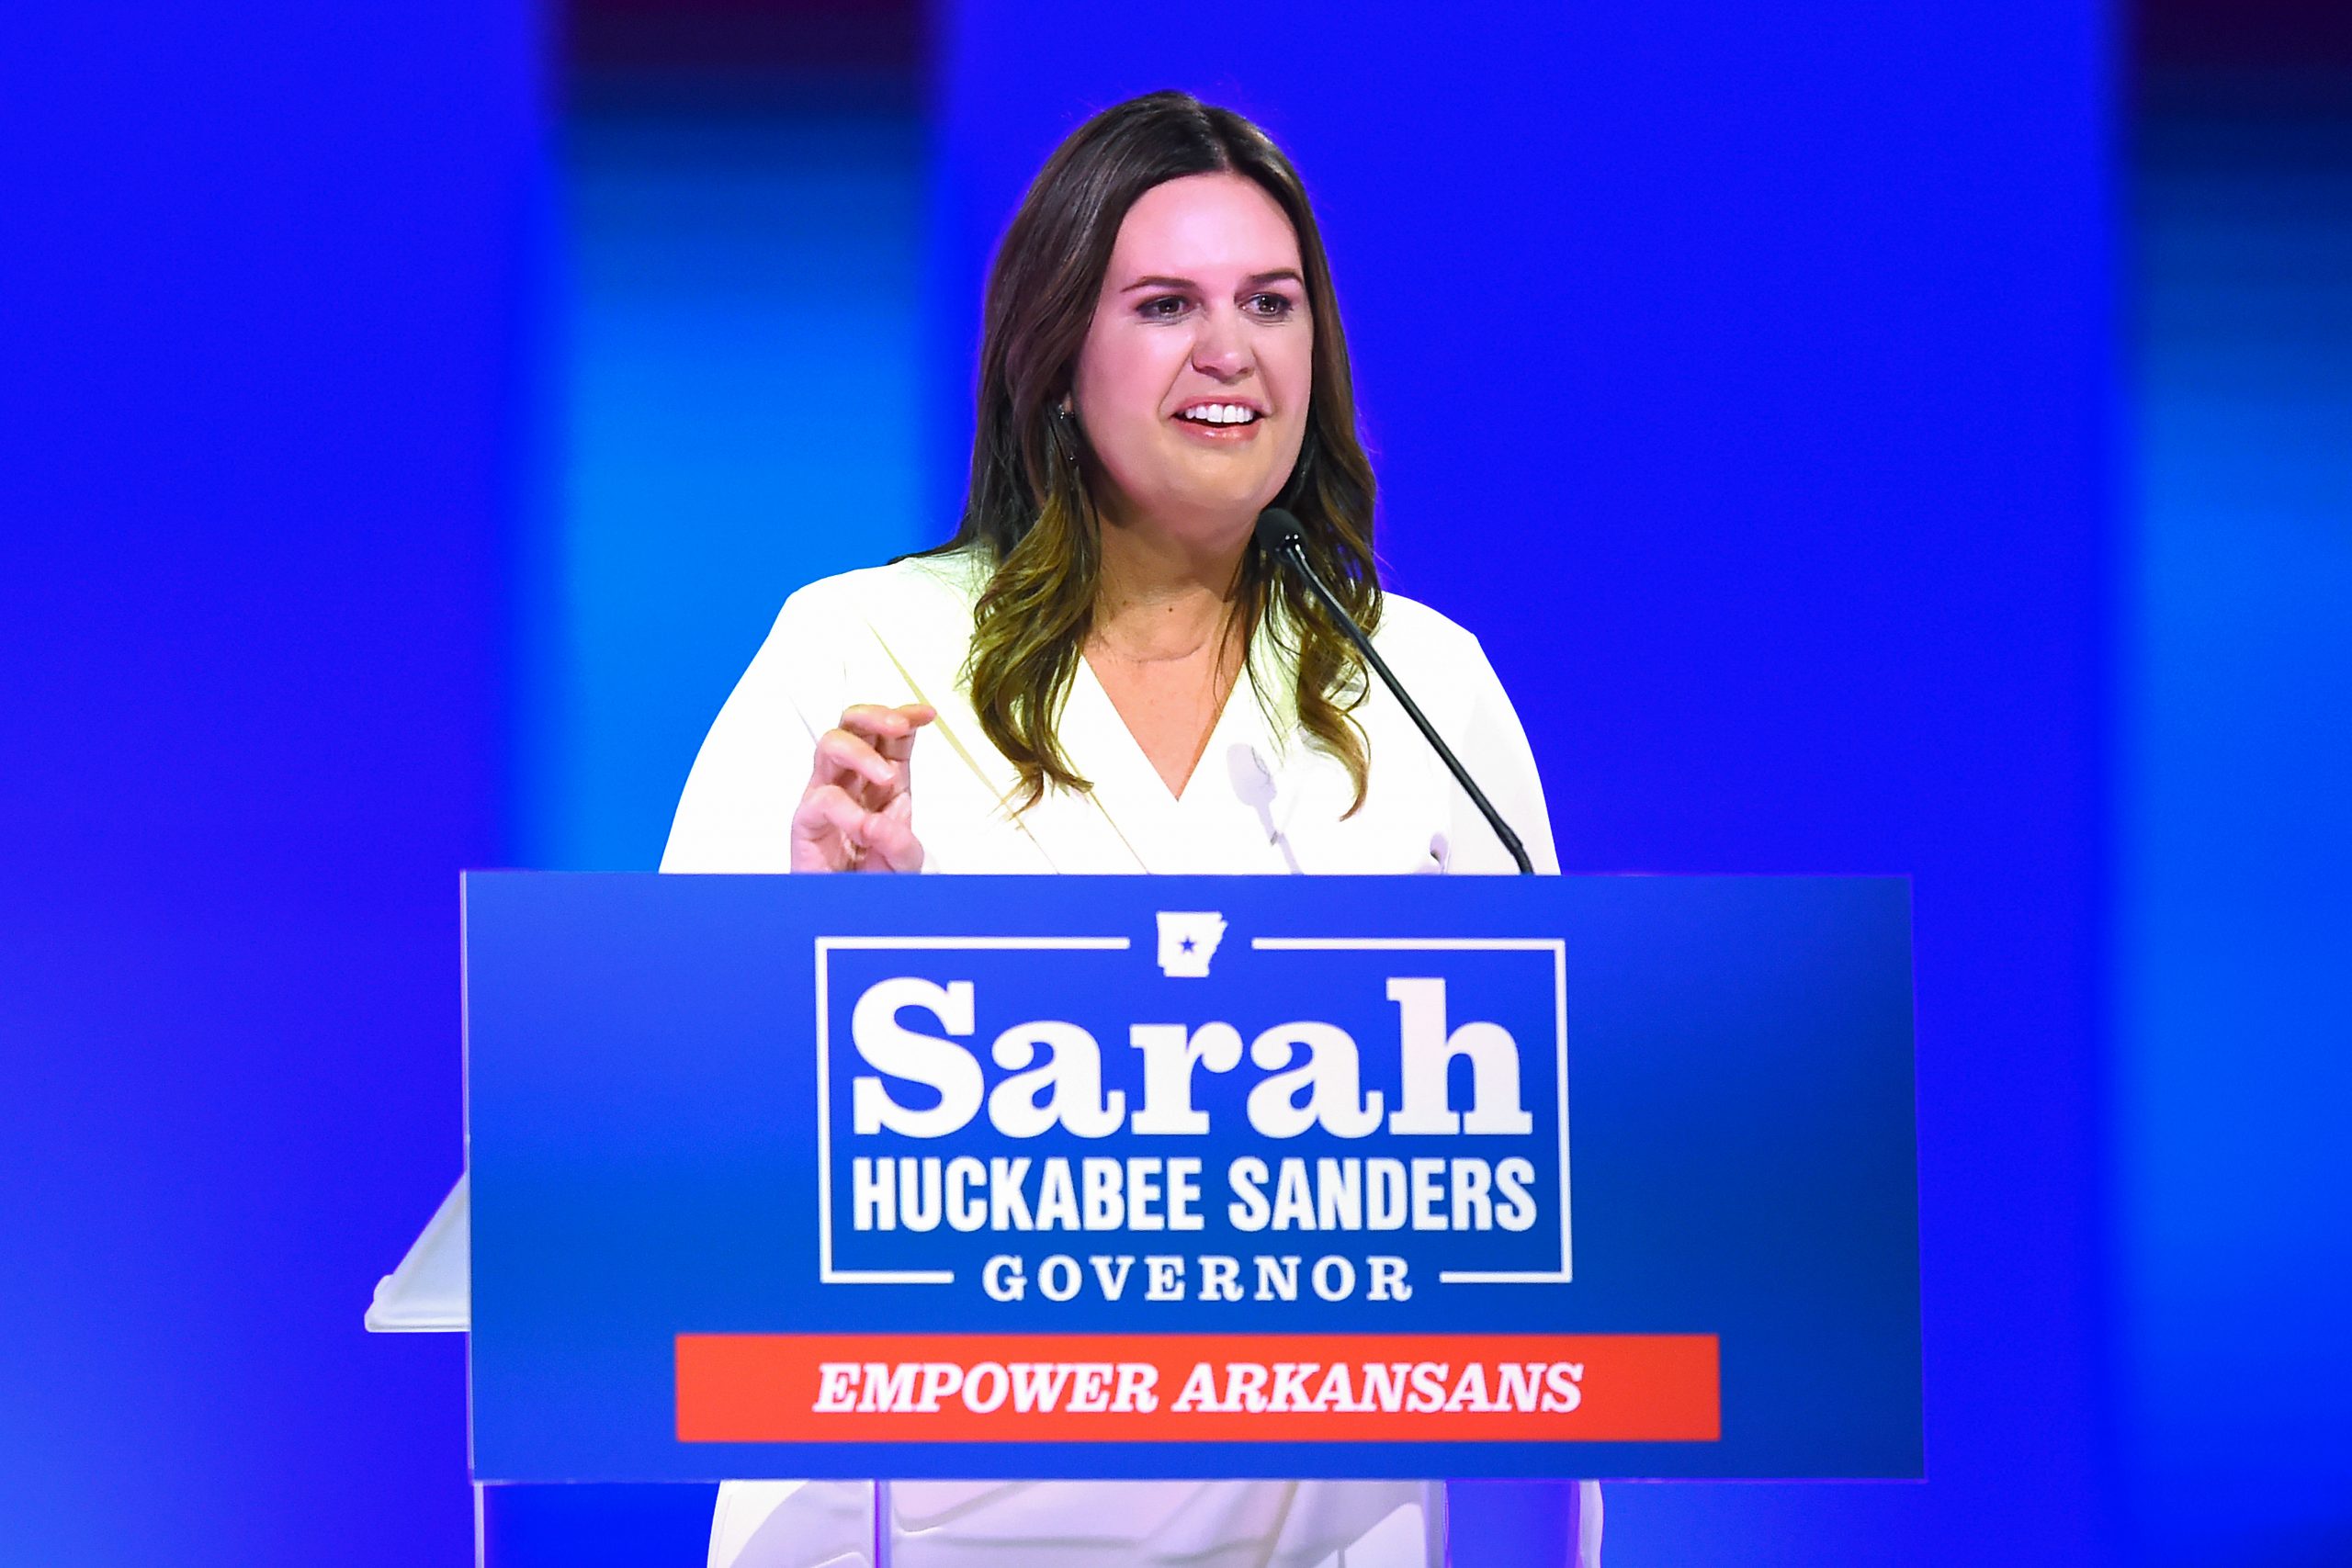 Who is Sarah Huckabee Sanders?